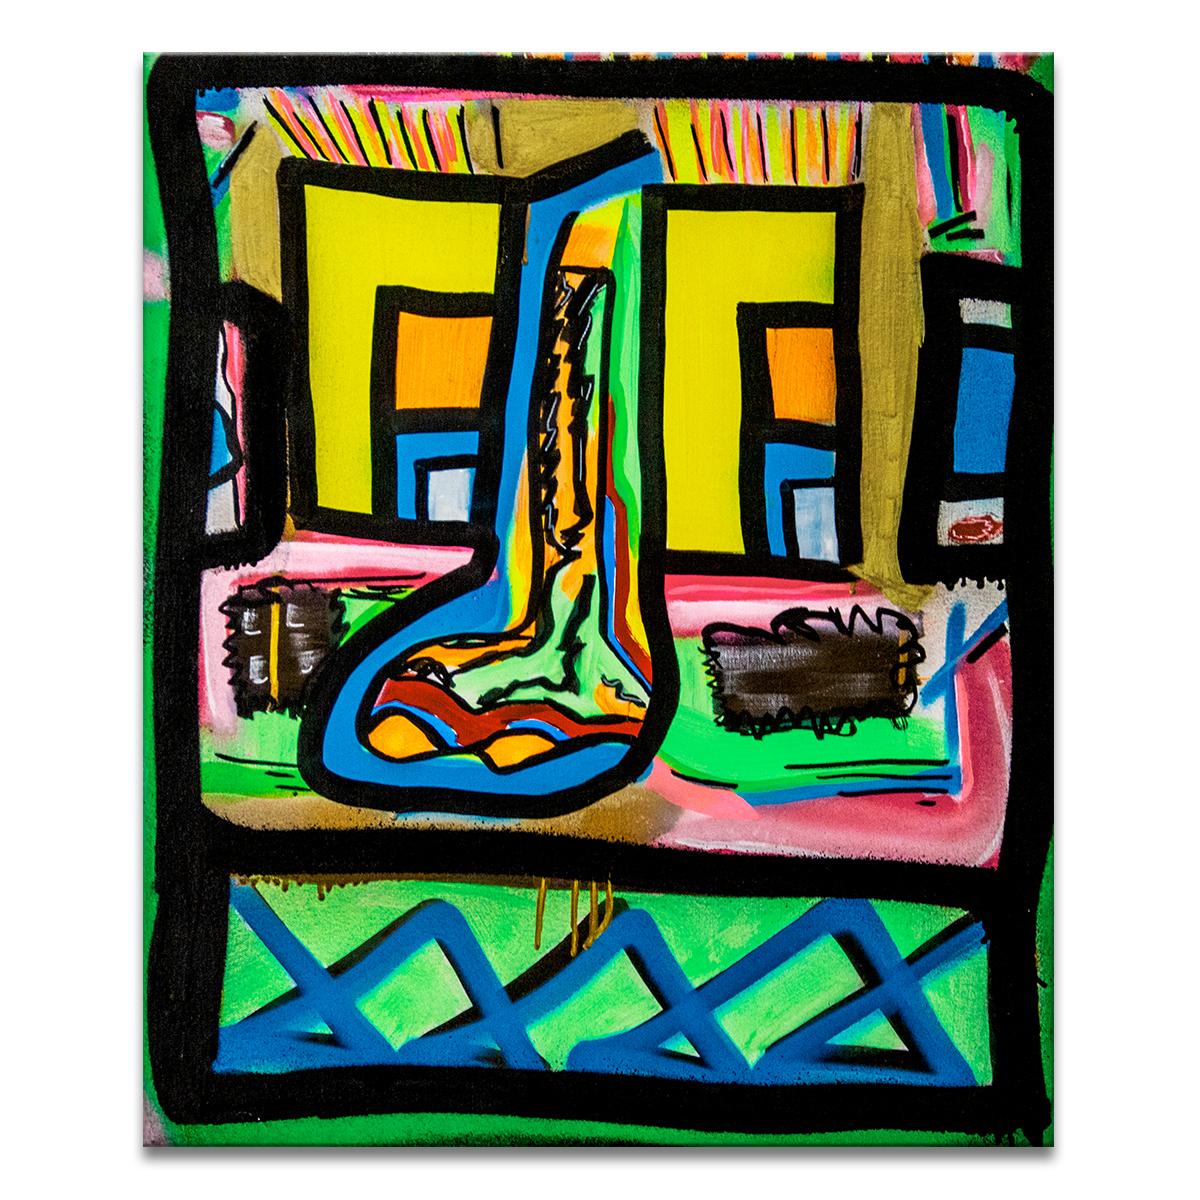 la peinture originale sur toile rembordée multicolore 'Untitled I' présente une esthétique audacieuse de street art dans des tons vibrants de bleu, jaune, vert, rose, orange, rouge et or. Une bombe de peinture à la main, l'art urbain de Big Bear est